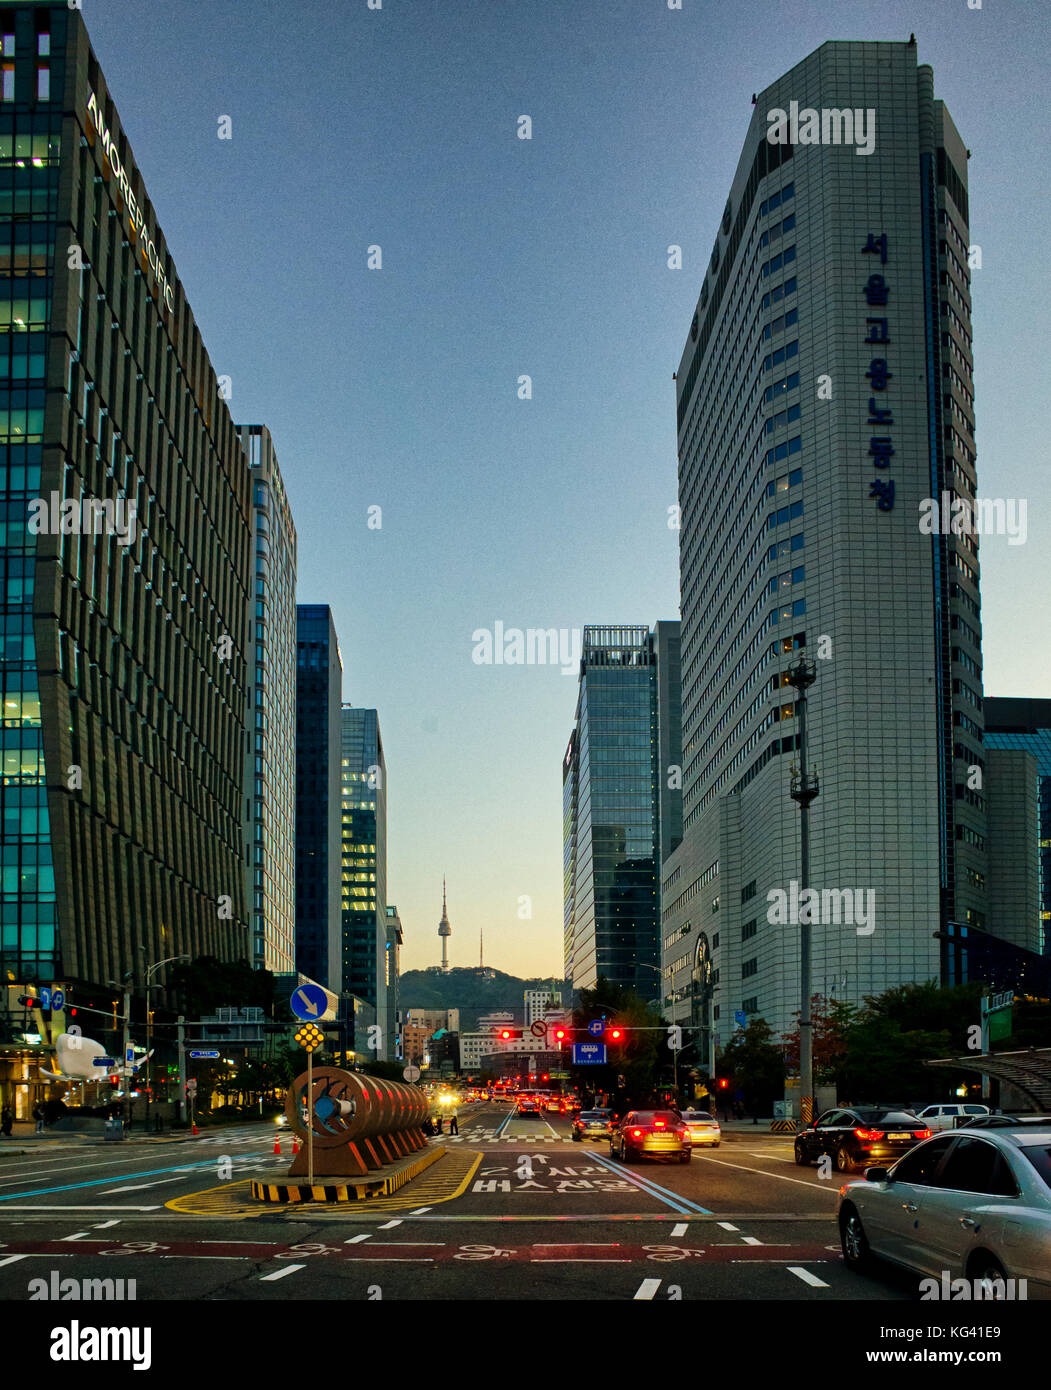 Séoul, Corée du Sud : vue le long d'une des principales rues centrales de monter Mongmyeoksan (270m) et la tour de télécommunications de Namsan ouvert aux touristes. Banque D'Images